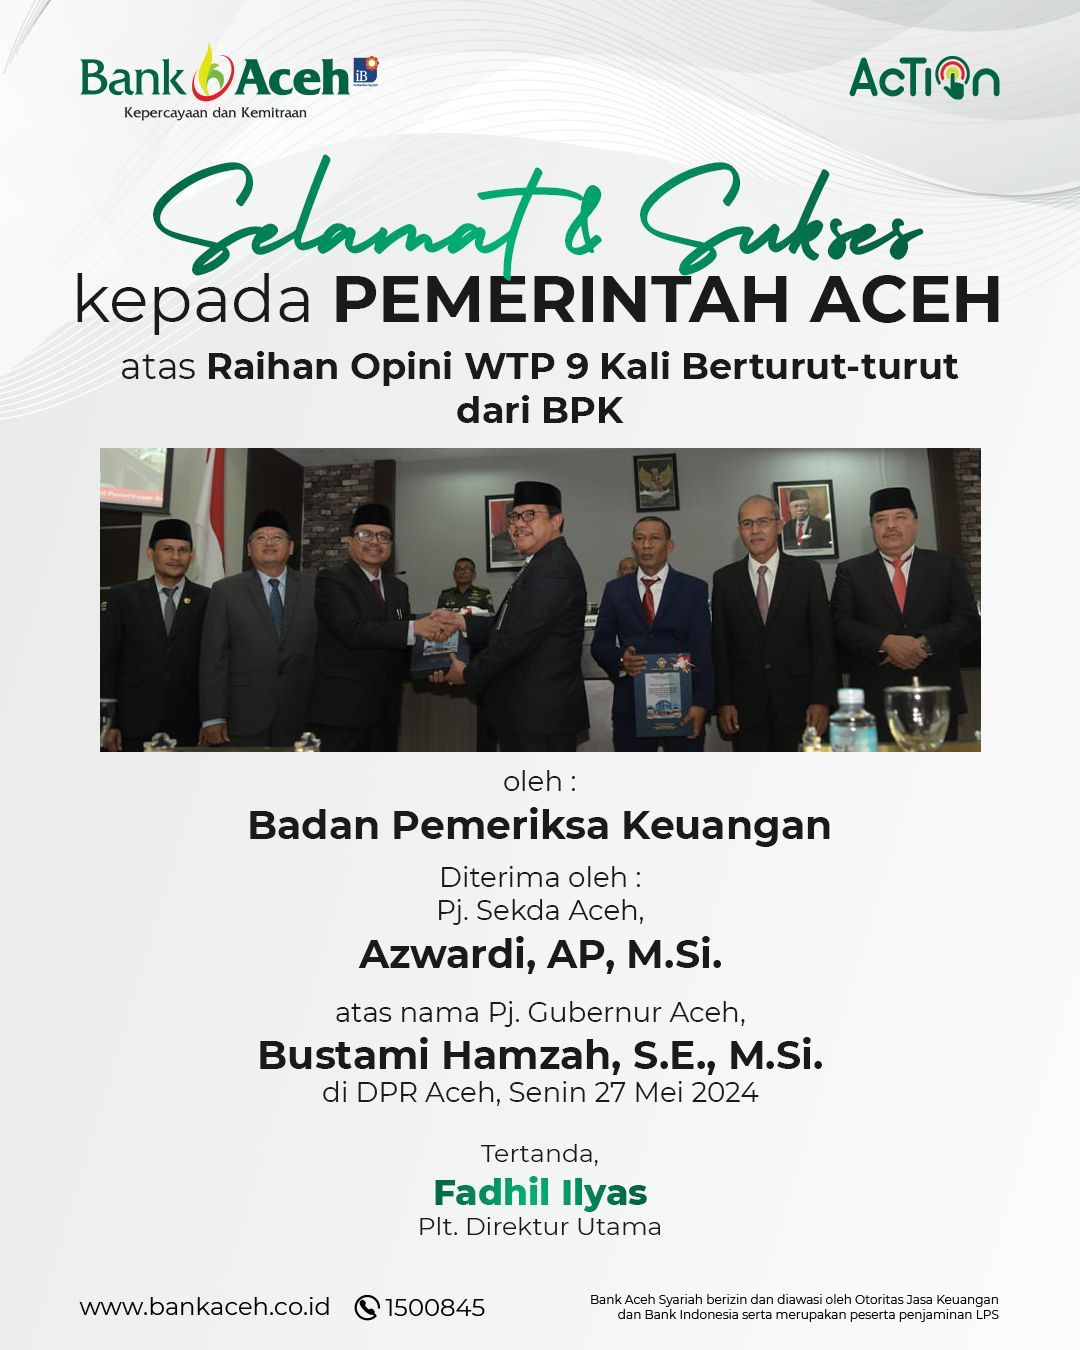 Selamat dan Sukses kepada Pemerintah Aceh atas Capai WTP BPK